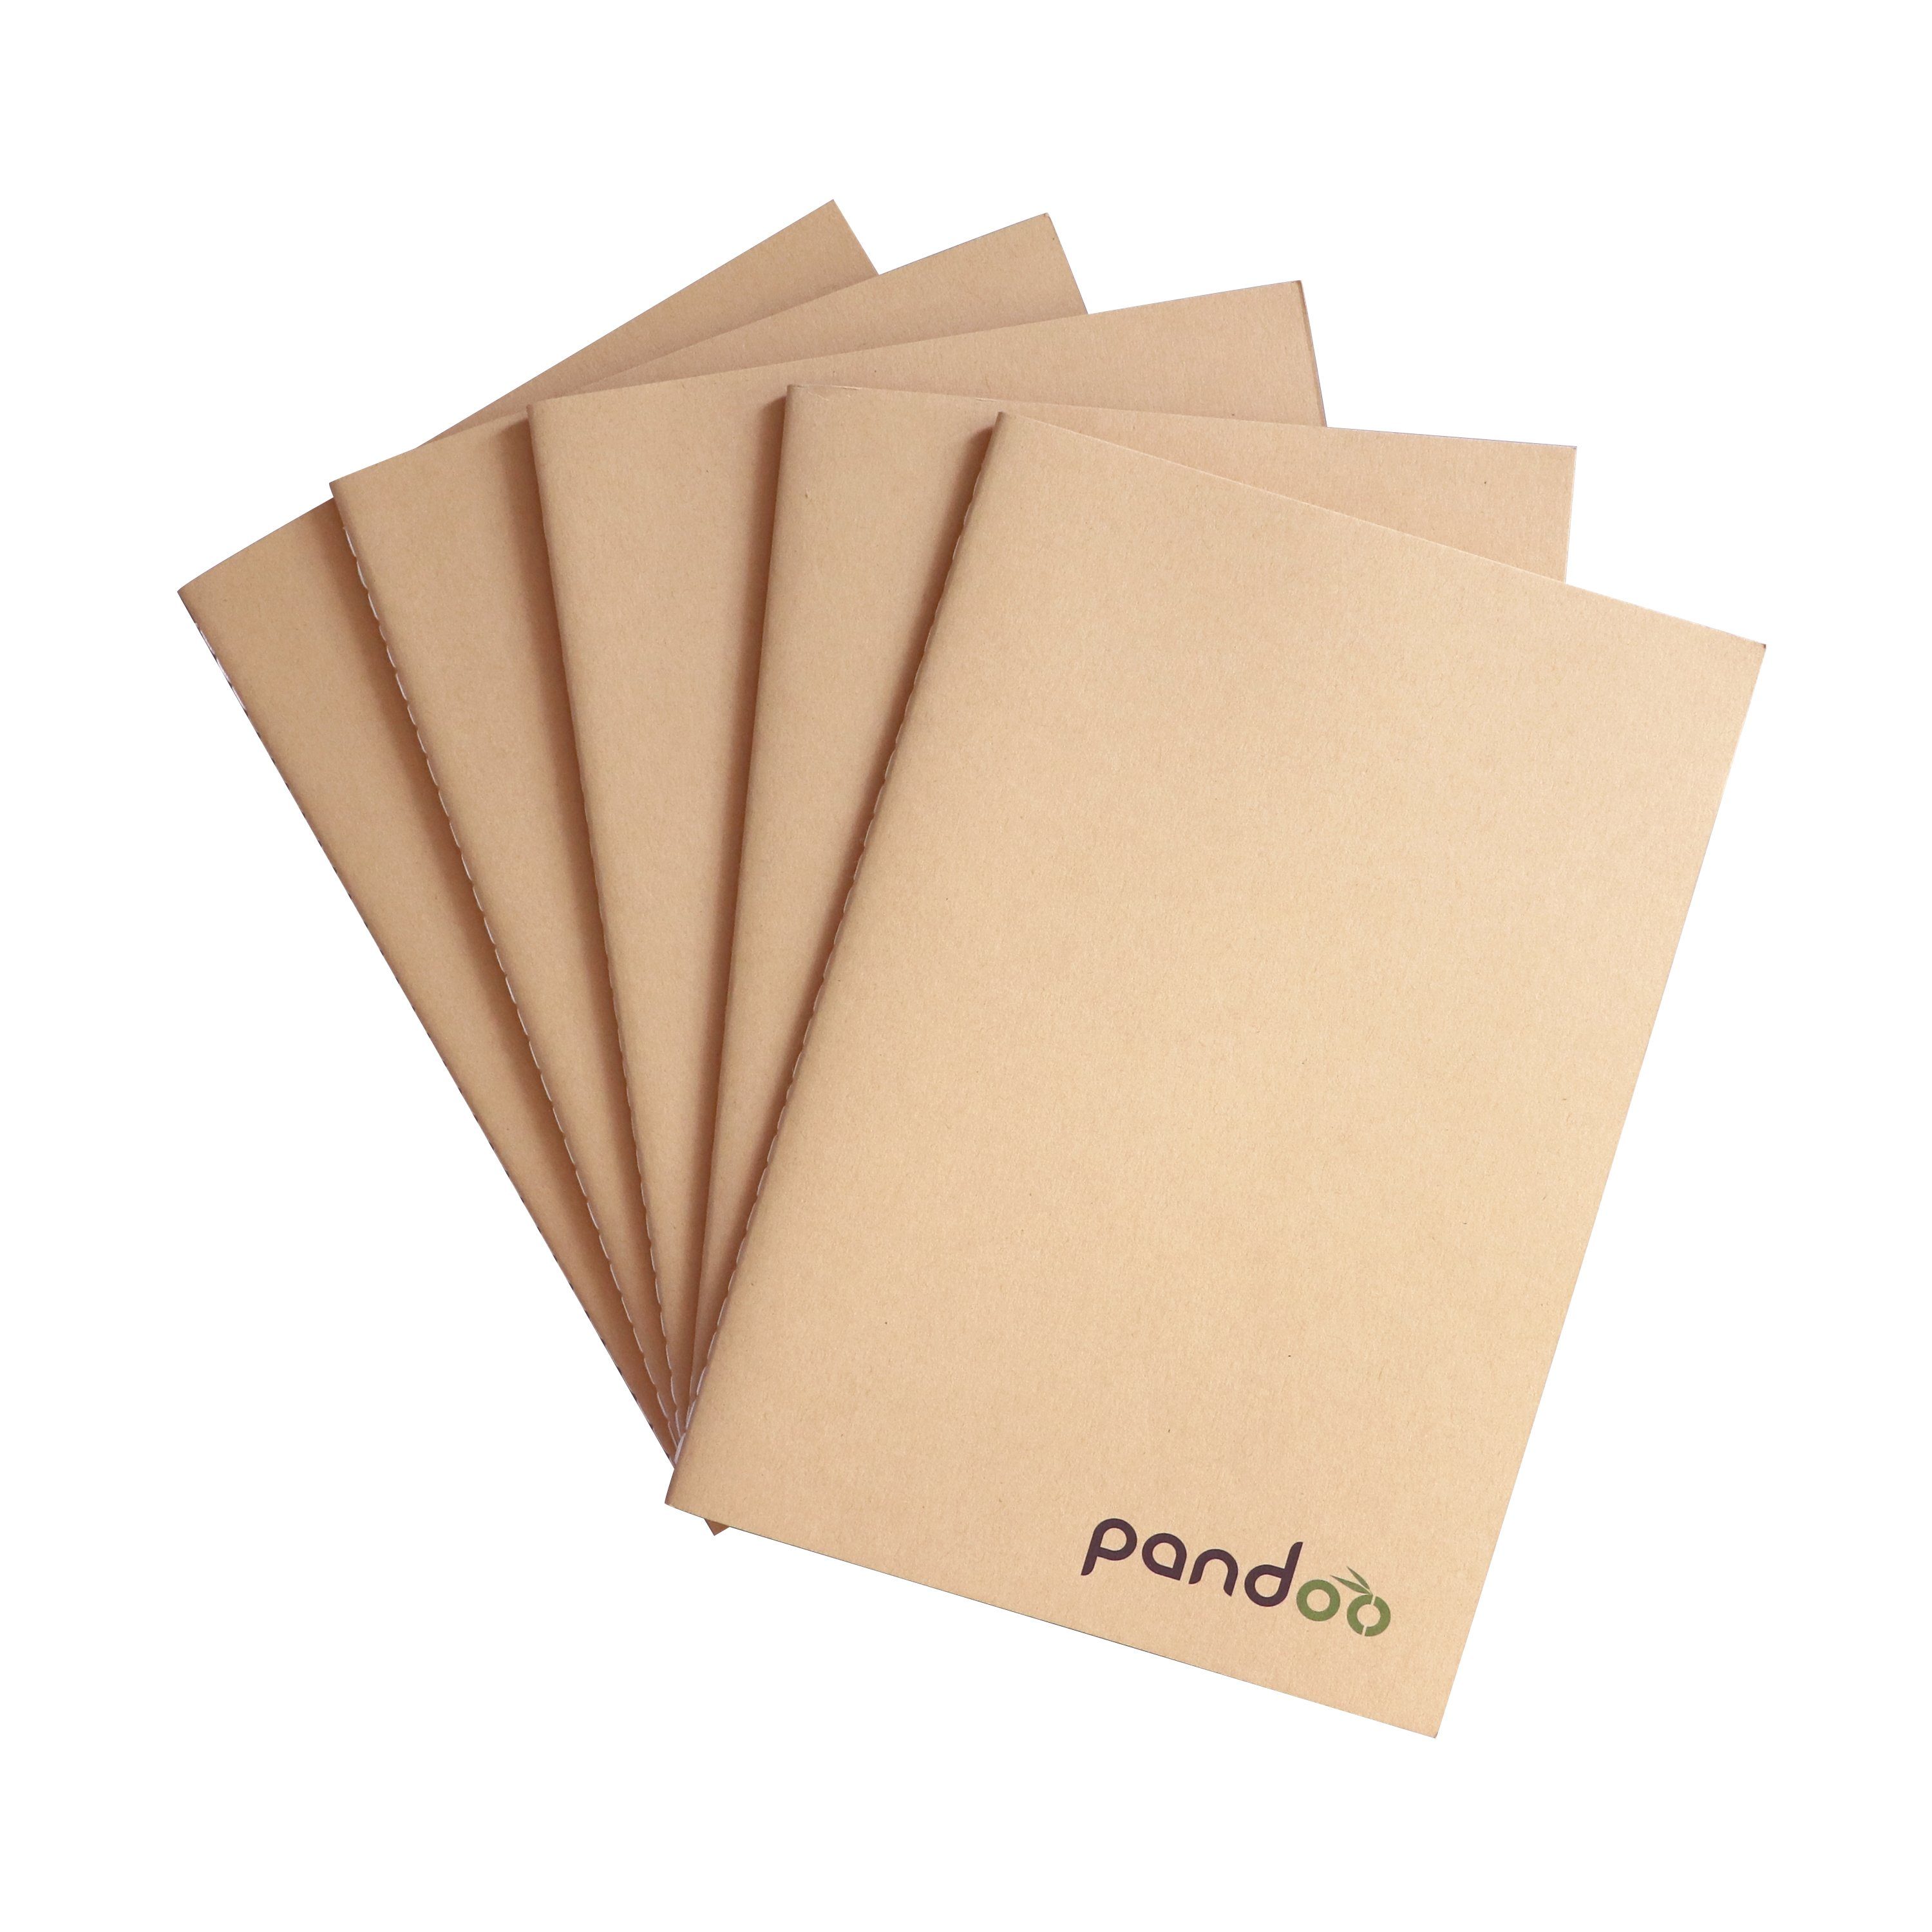 pandoo Notizheft 5 Notizhefte aus 100% Bambuszellstoff, A4 und A5 Format